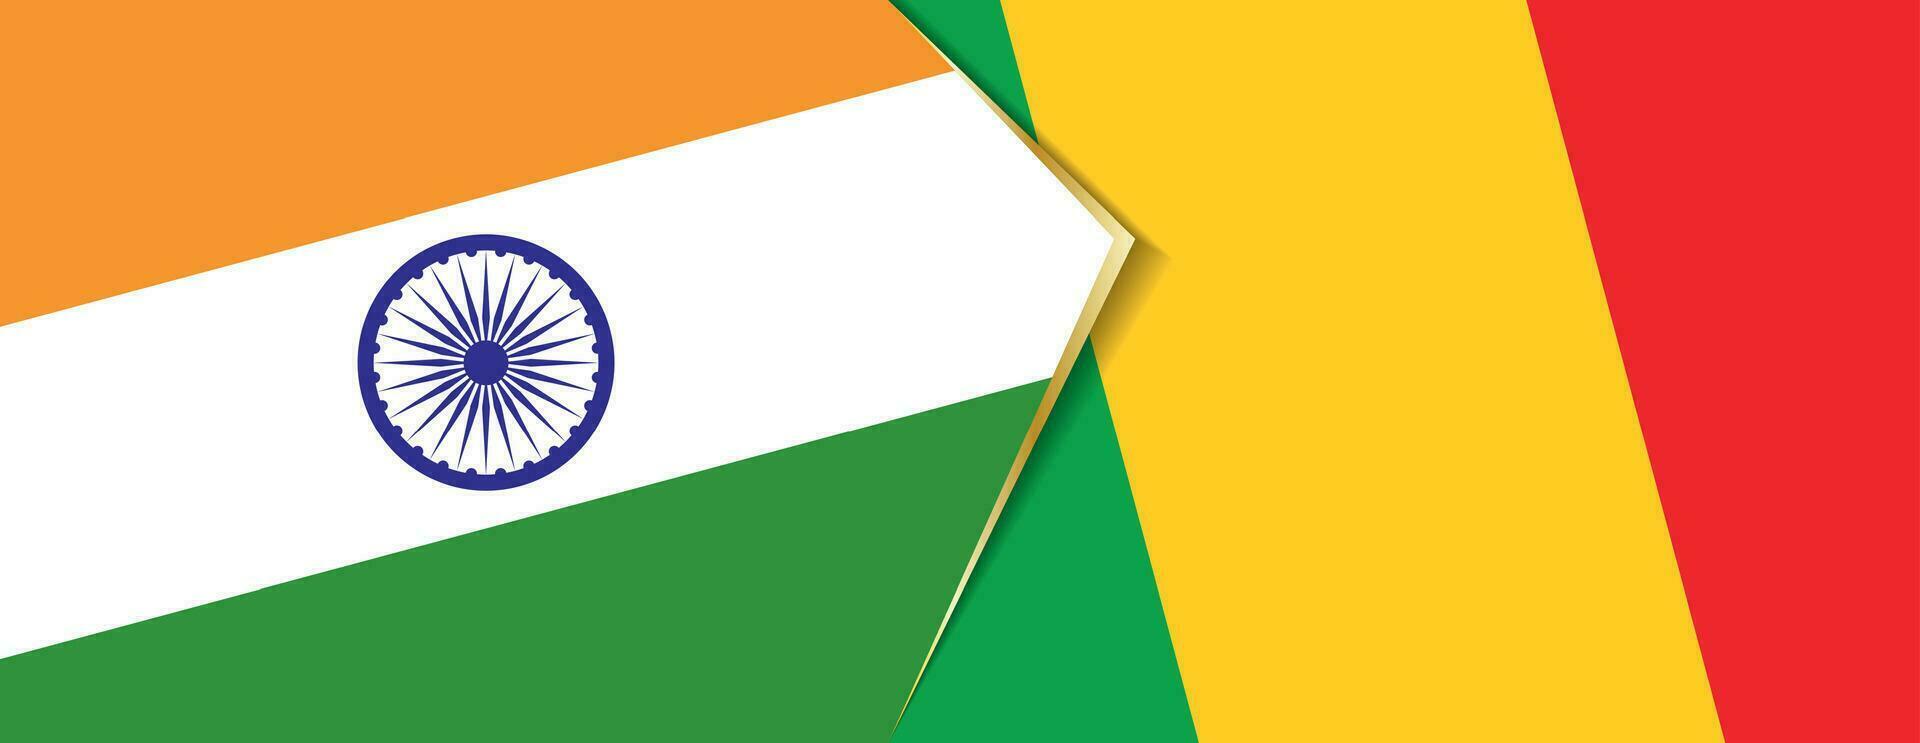 Indien und Mali Flaggen, zwei Vektor Flaggen.